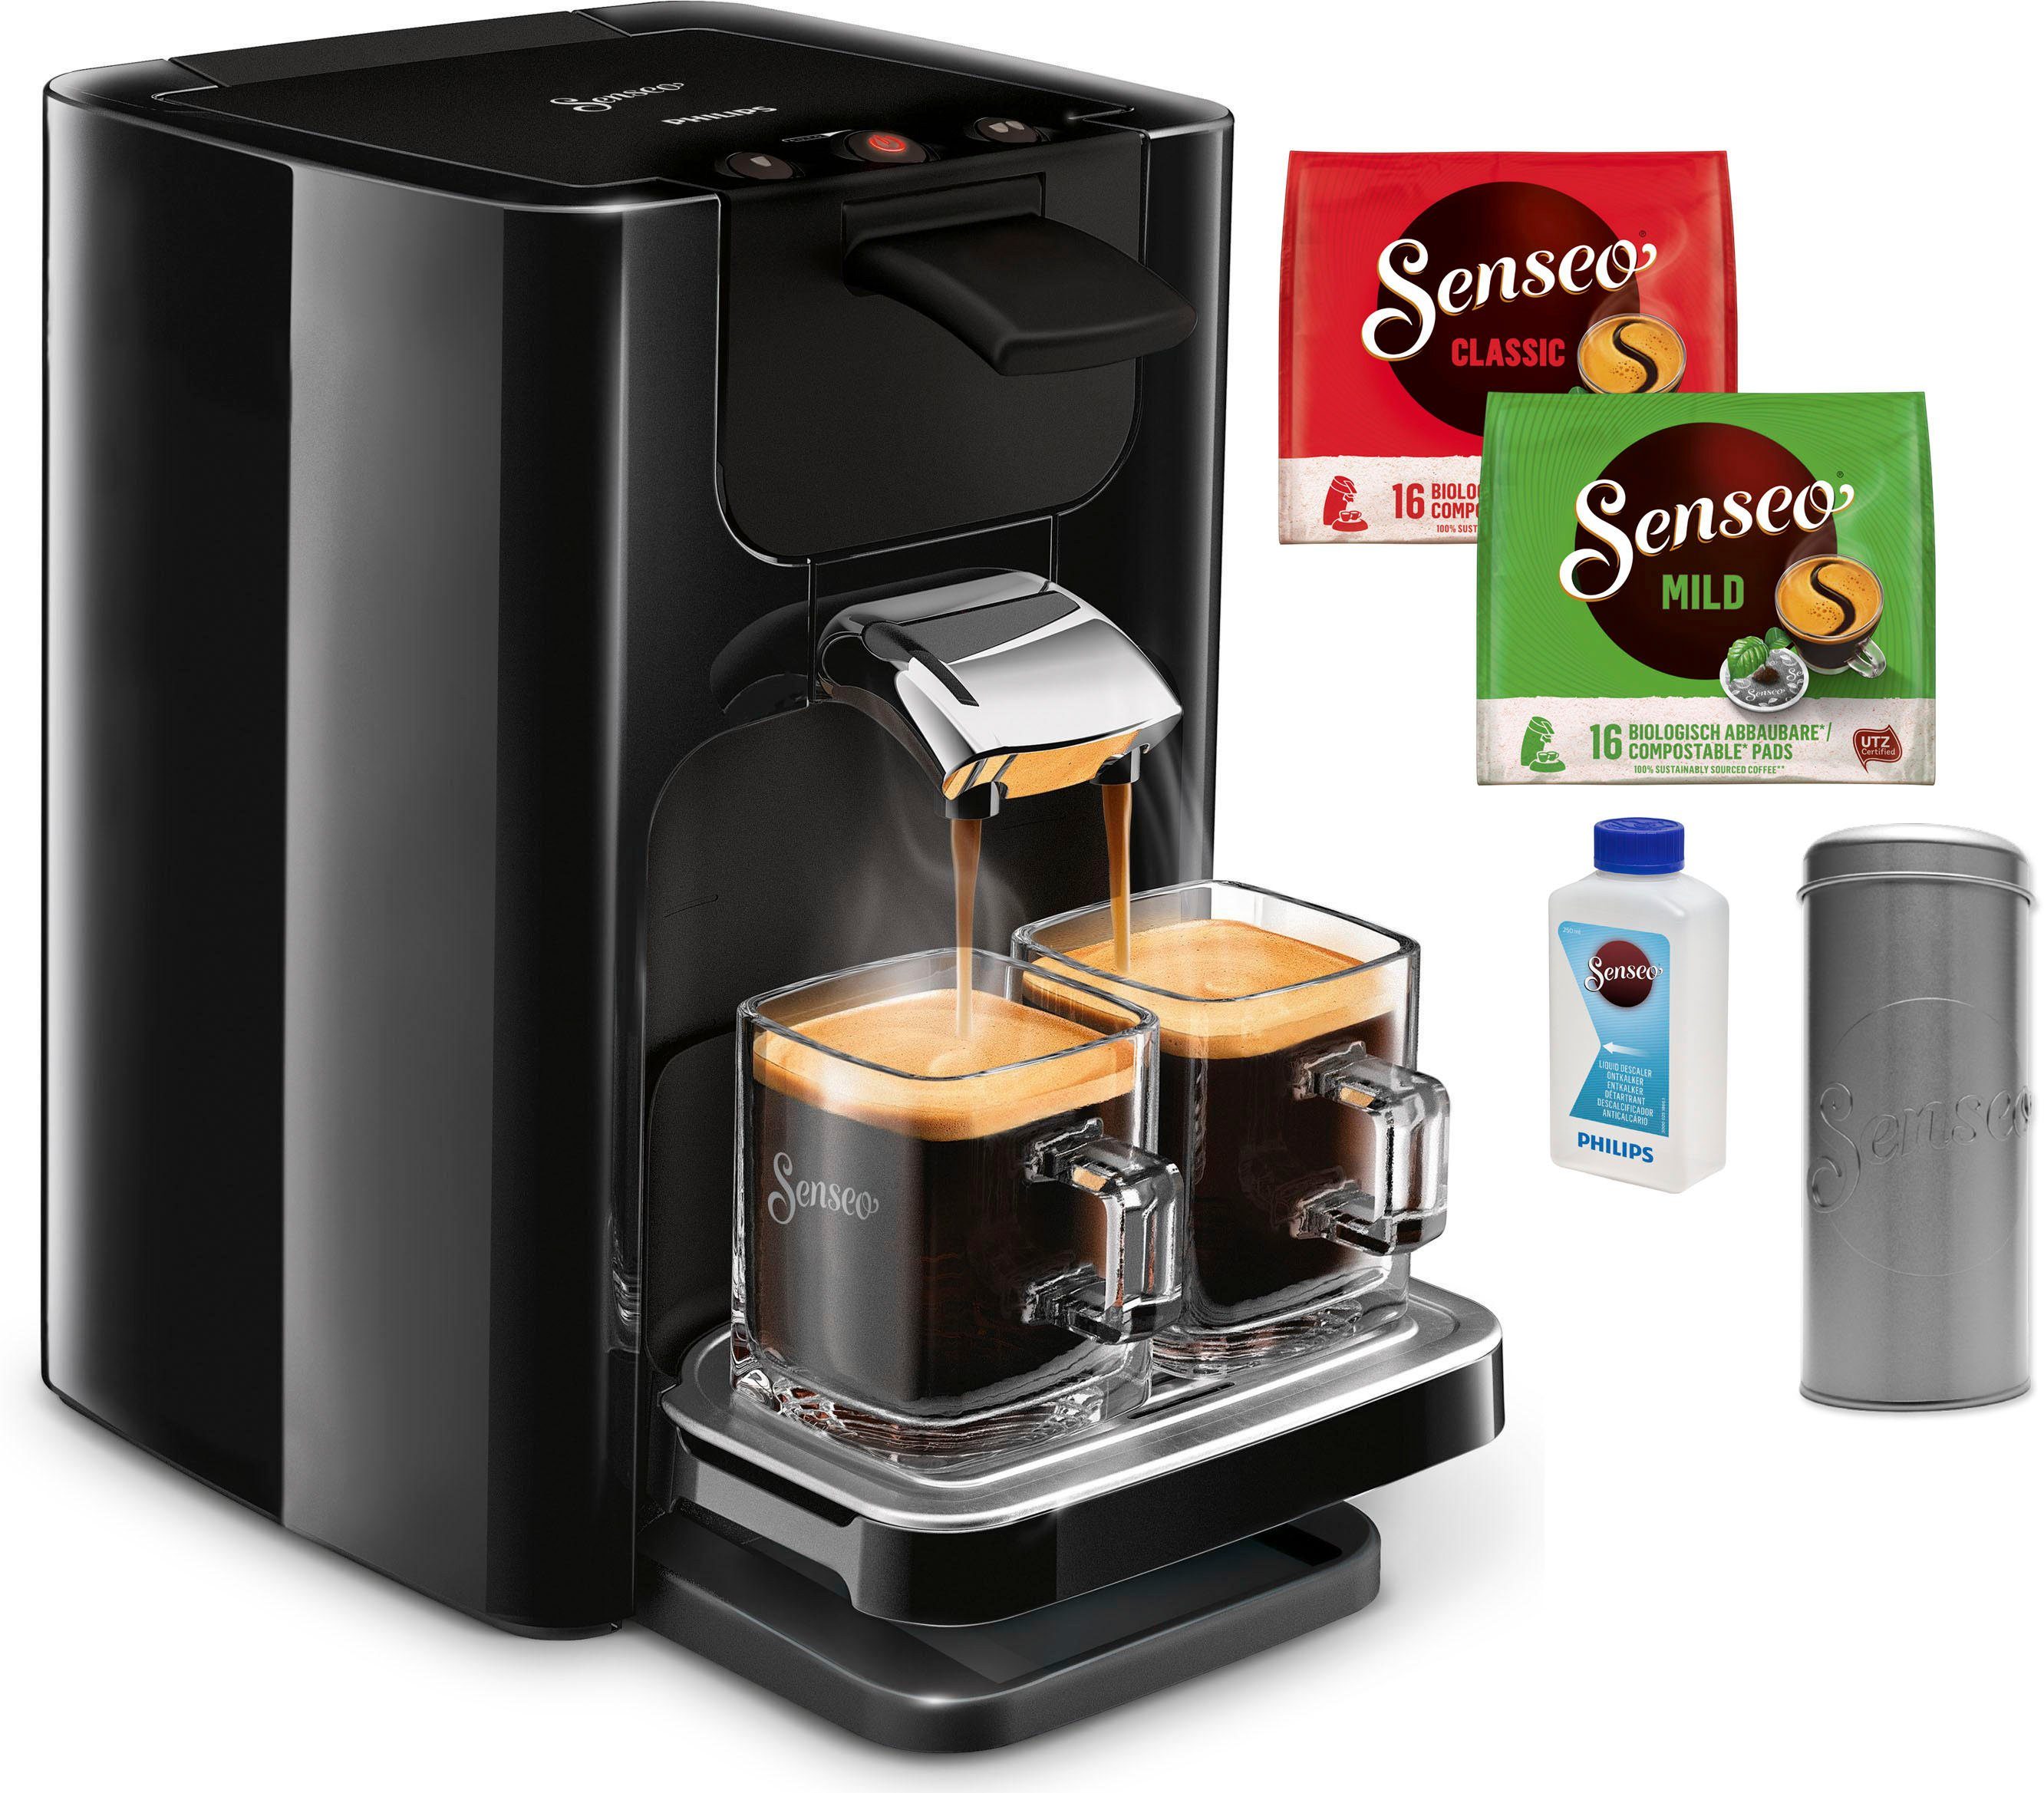 HD7865/60, SENSEO® 23,90 von im inkl. Kaffeepadmaschine Gratis-Zugaben Senseo Philips Quadrante Wert